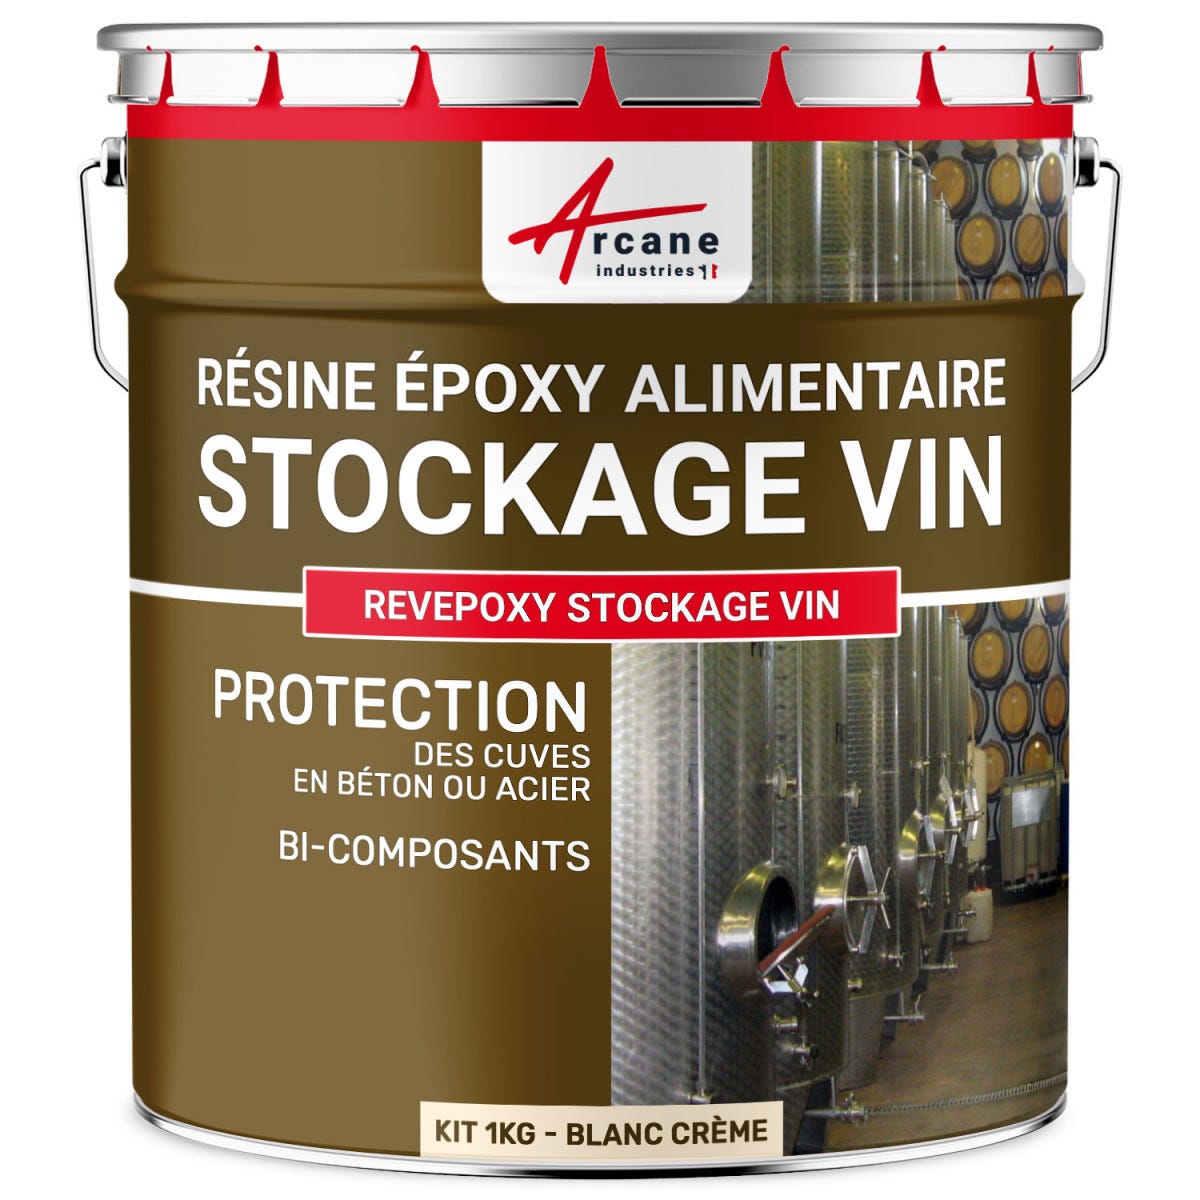 Resine epoxy pour Cuve a Vin - REVEPOXY STOCKAGE VIN - 1 kg - Blanc Crème - ARCANE INDUSTRIES 0